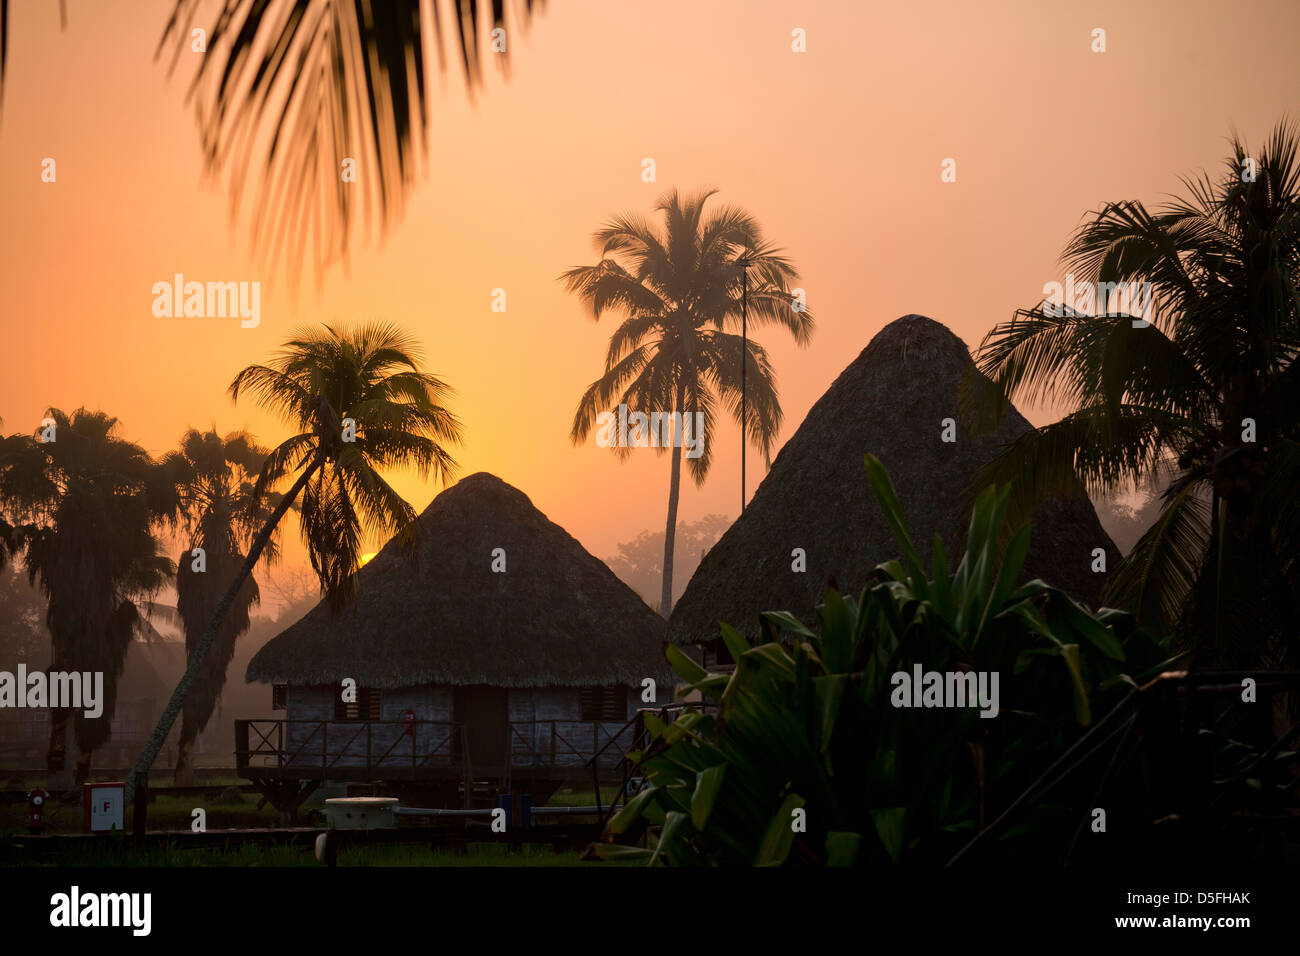 Atmosfera mattutina a Villa Guama, piccolo hotel progettato per assomigliare ad un villaggio indiano su palafitte in acqua vicino a Boca de Guama, Foto Stock